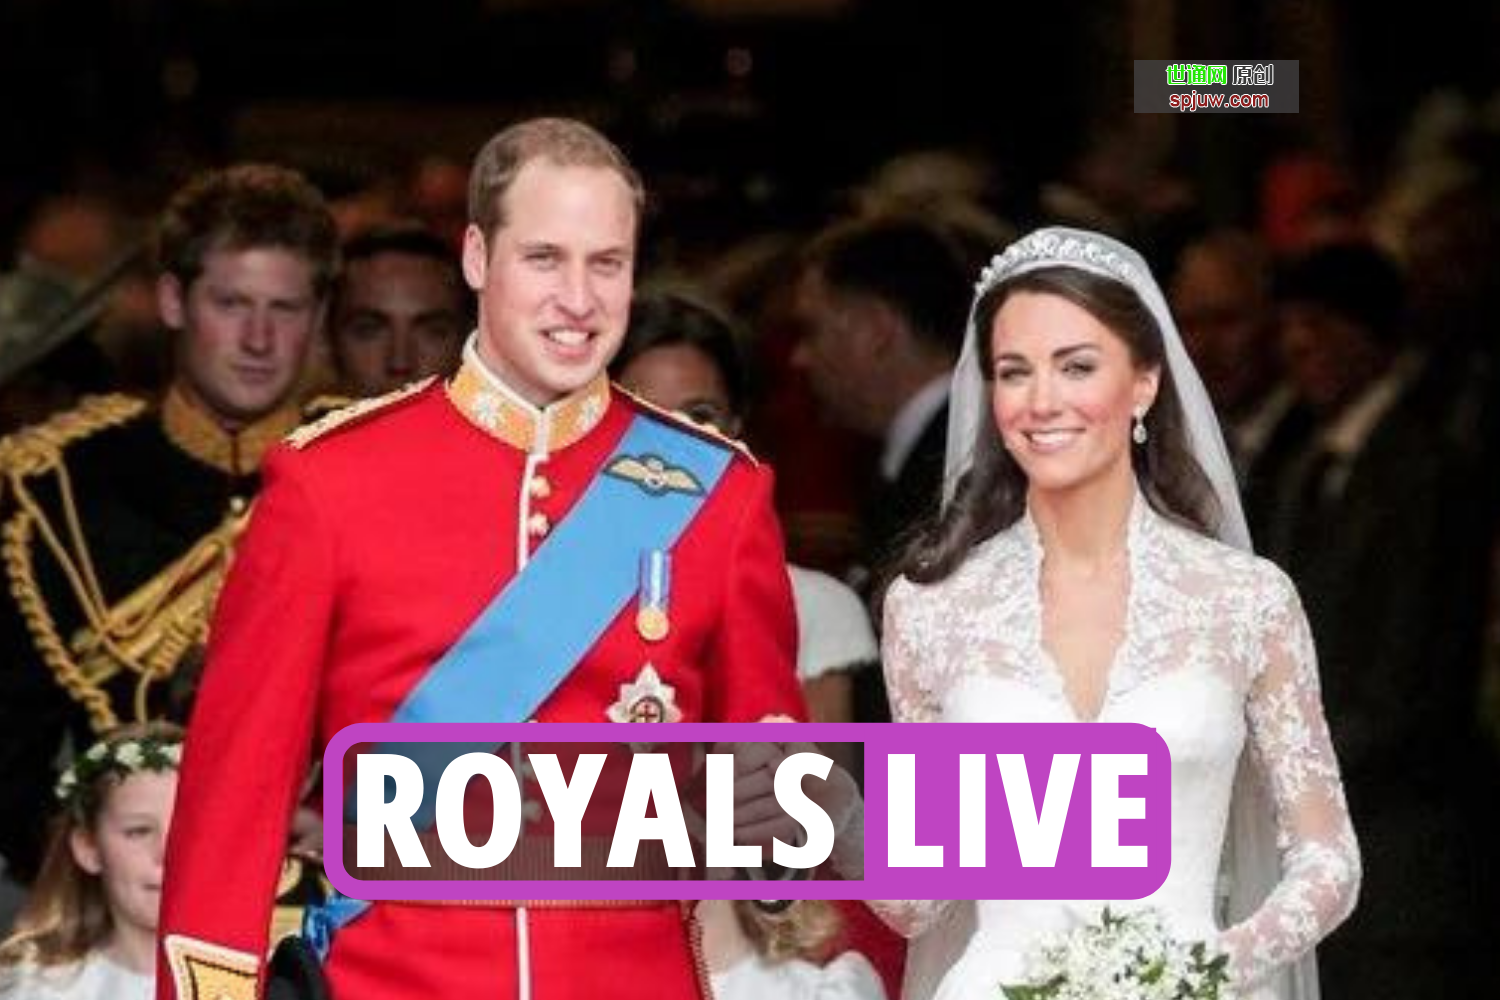 唇语读者揭示了女王在威廉和凯特的皇室婚礼上“不赞成”的言论